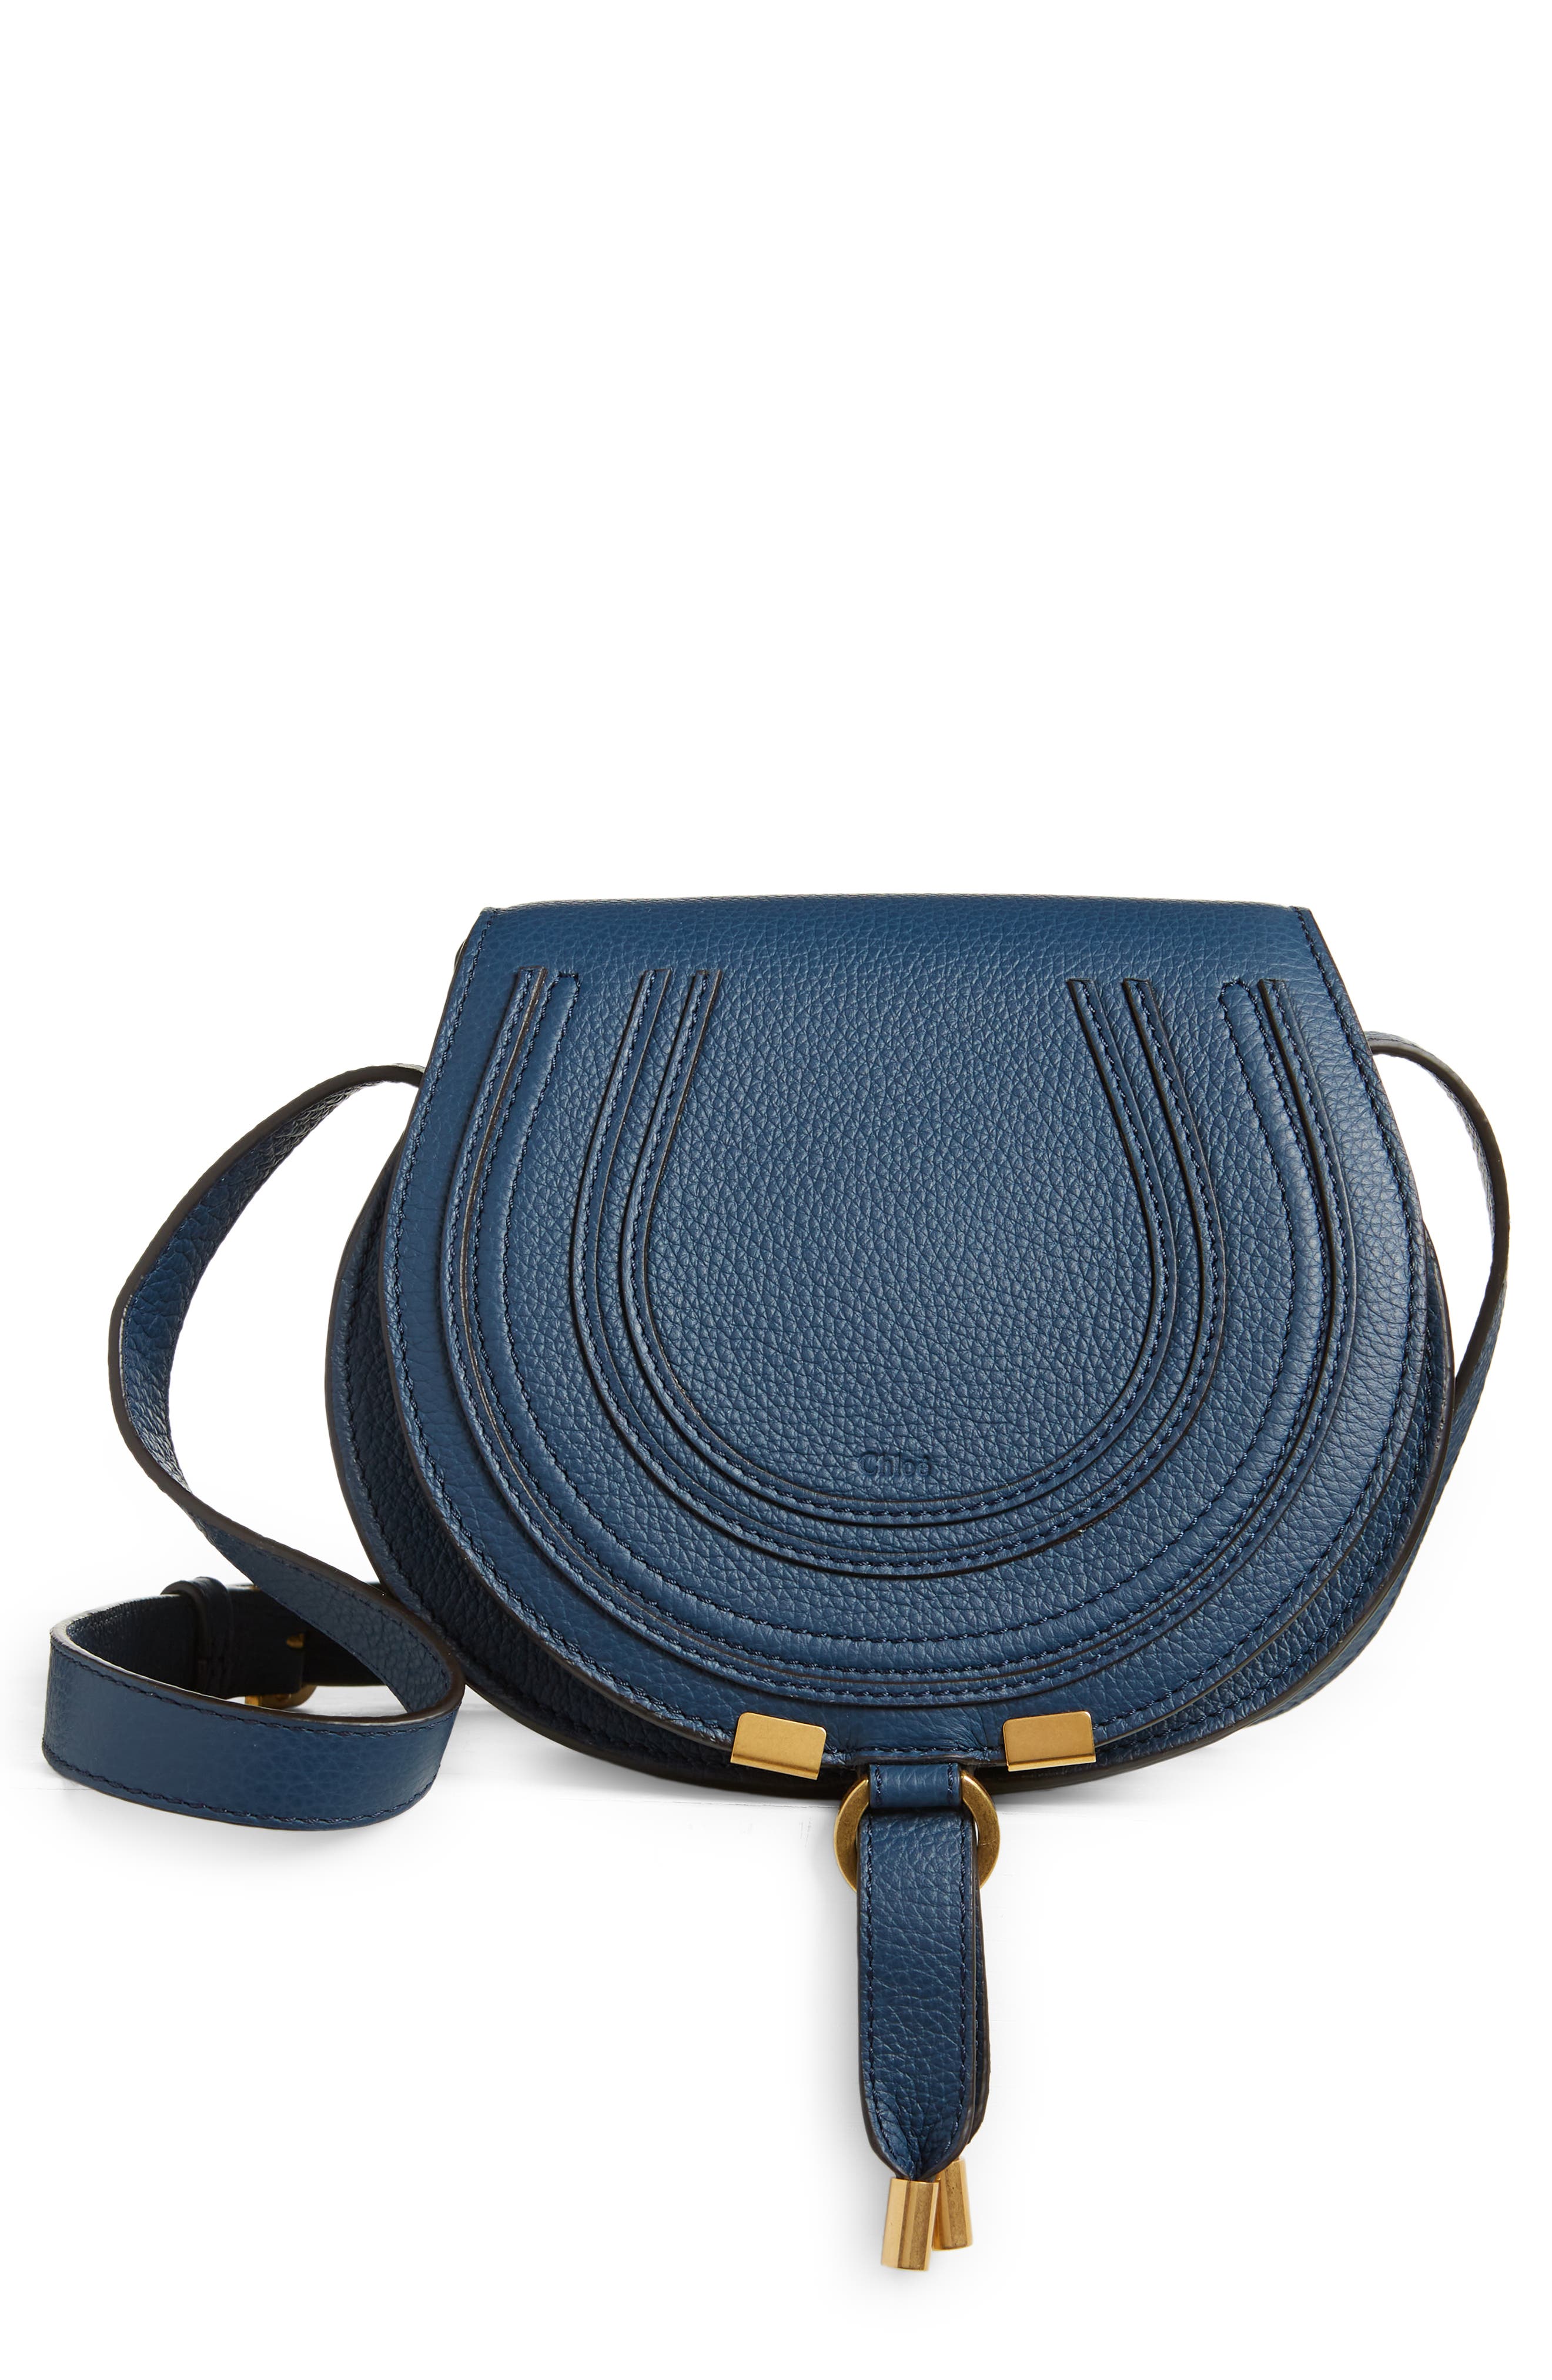 Ladies Bag Designer HandBags Shoulder Bag BLUE 